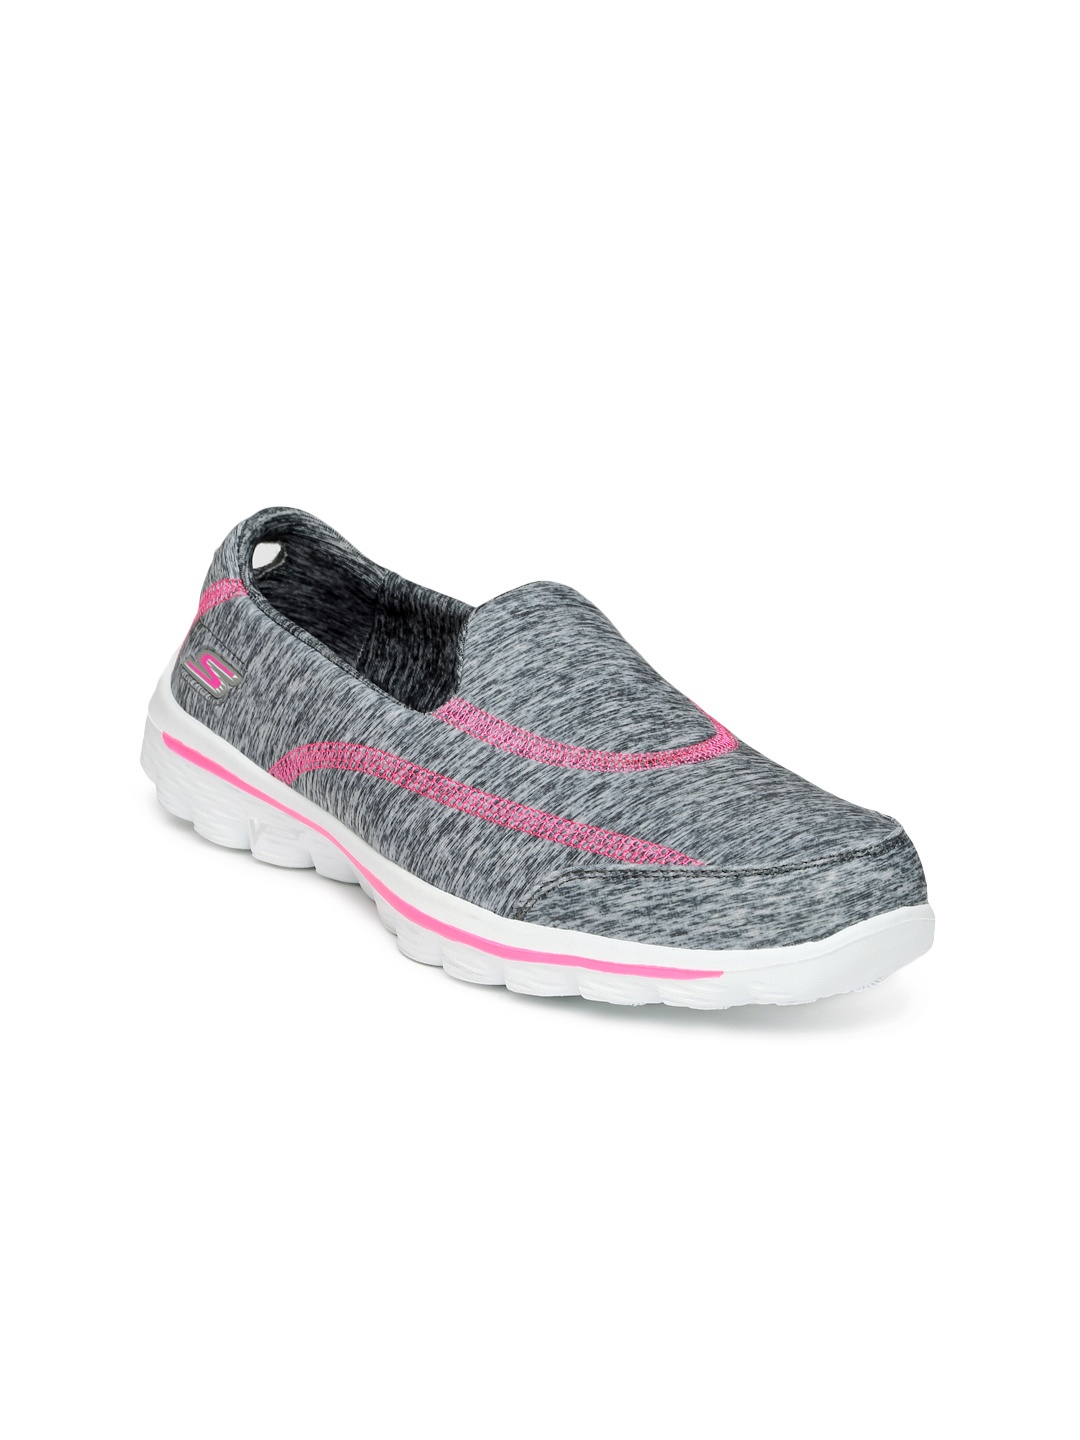 Myntra Skechers Women Grey Go Walk 2 Walking Shoes 851190 | Buy Myntra ...